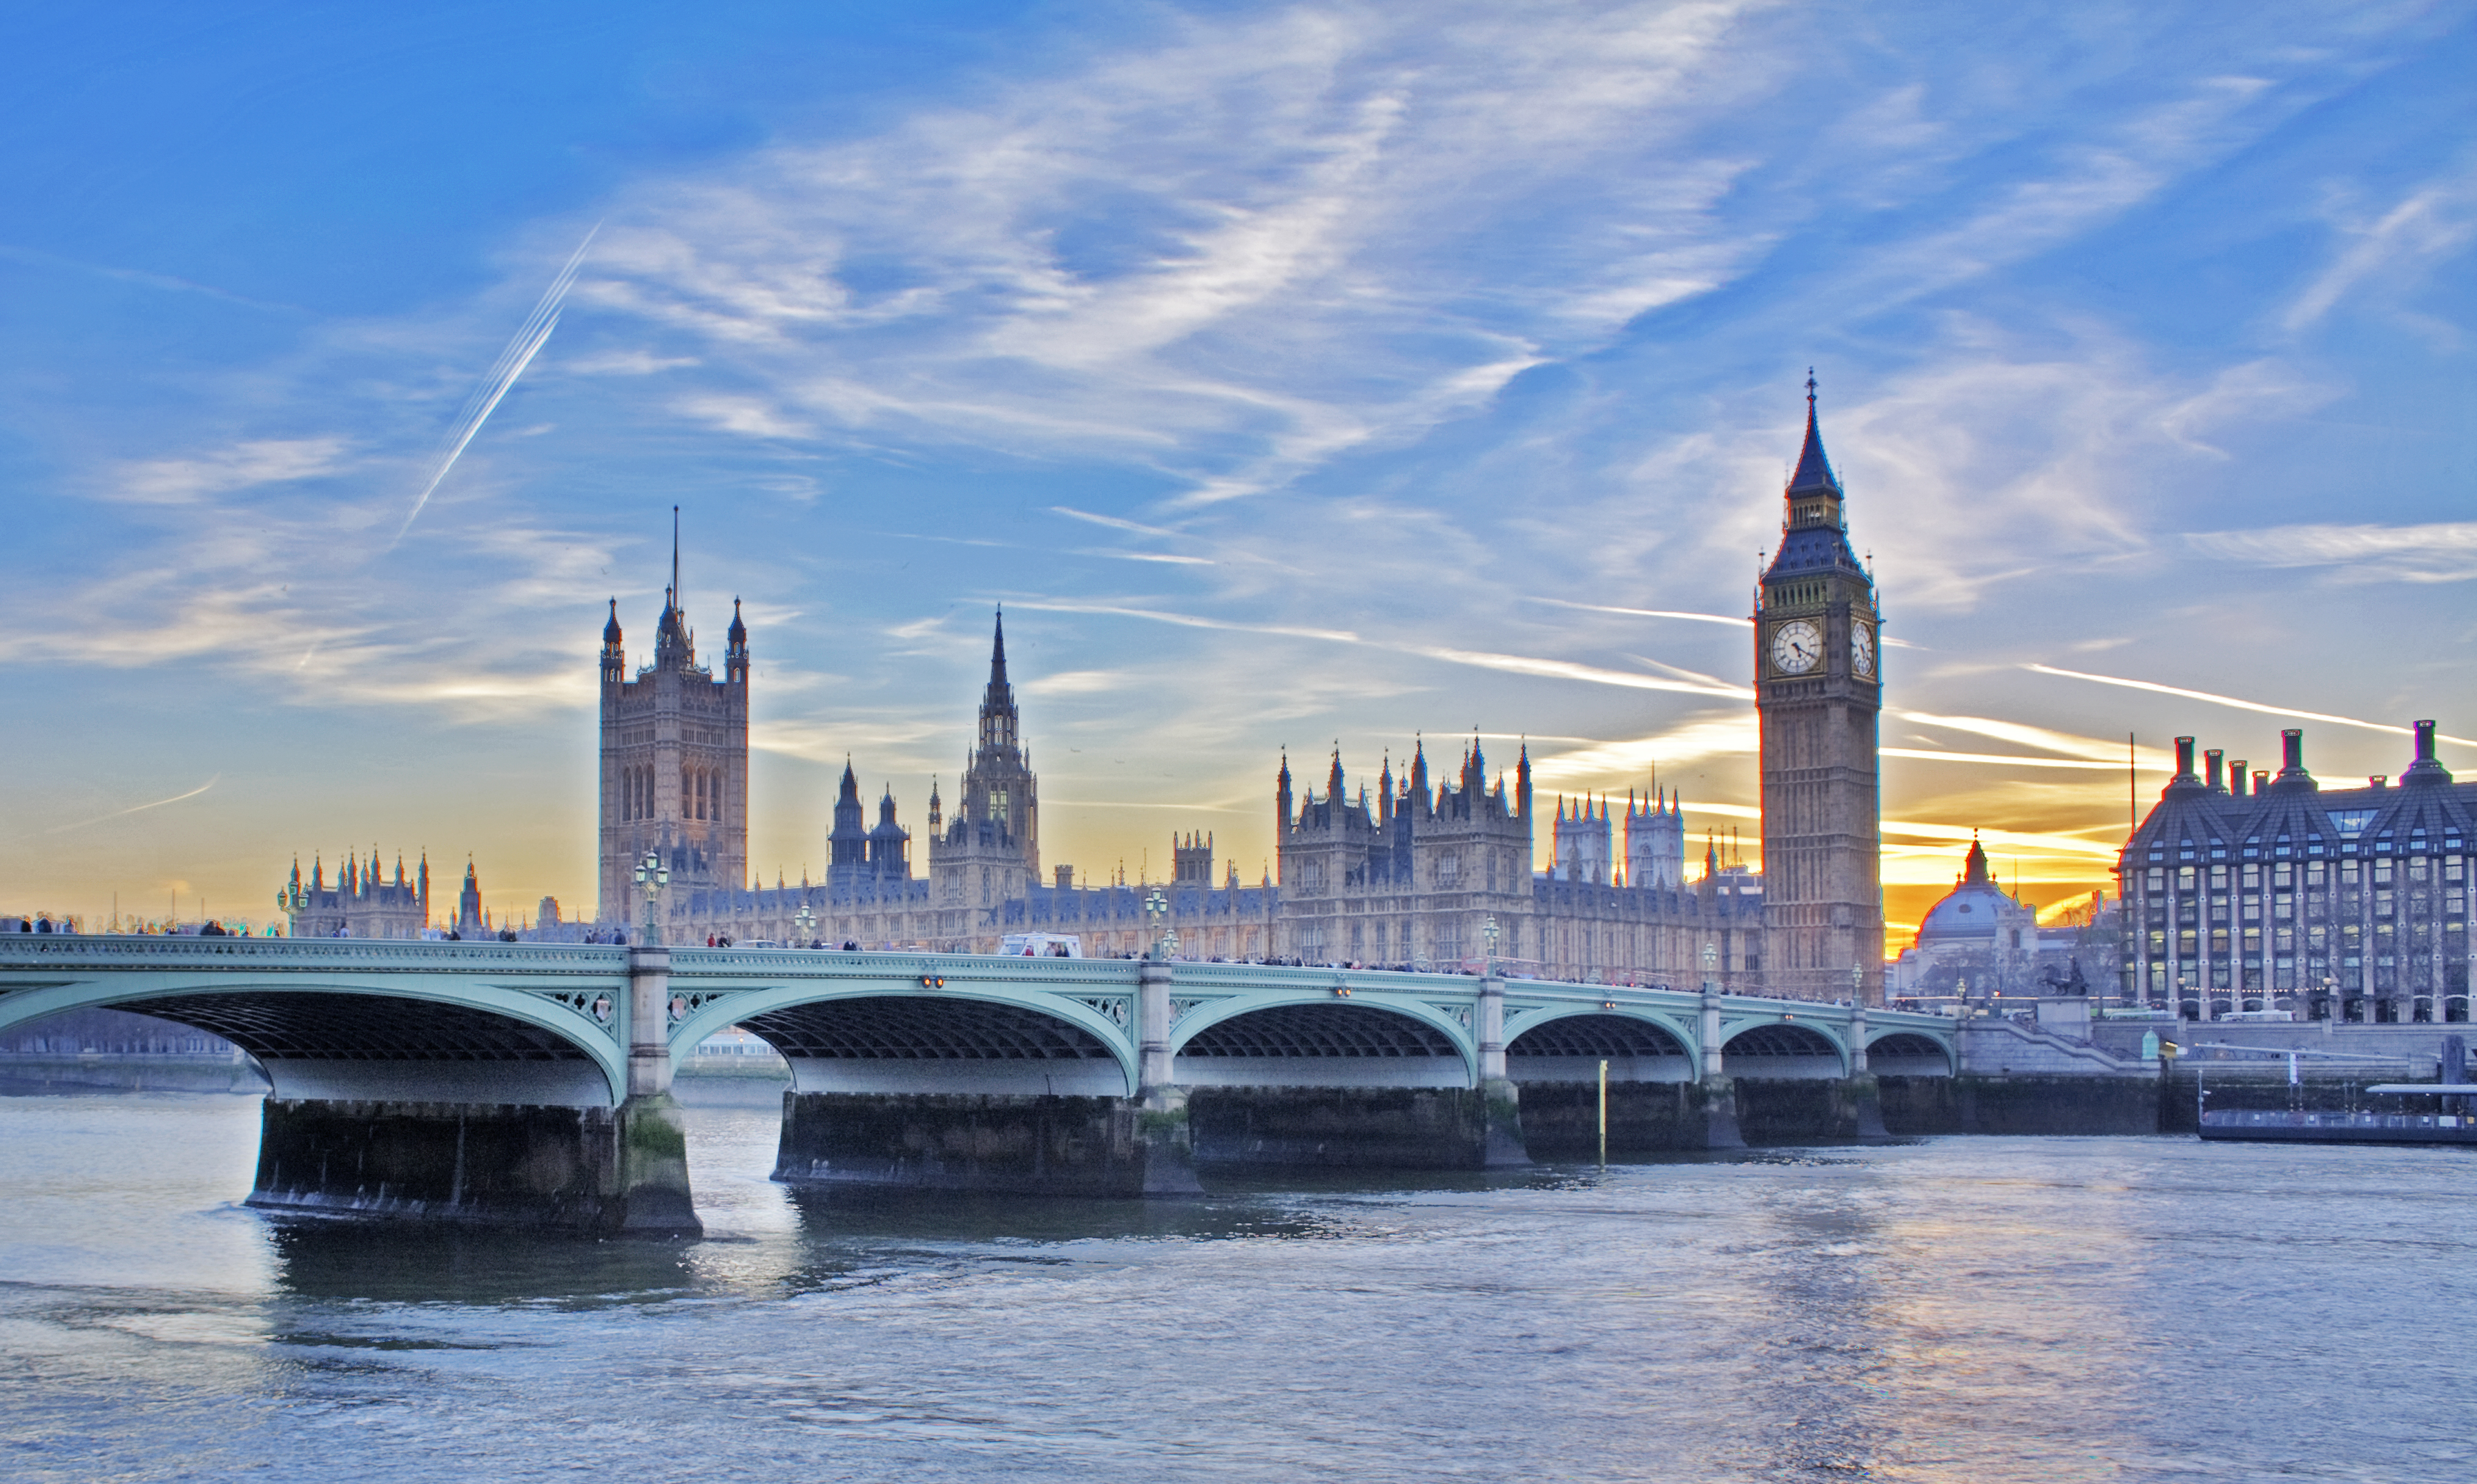 フリー画像 人工風景 建造物 建築物 橋の風景 ビッグ ベン ウェストミンスター宮殿 世界遺産 城 宮殿 イギリス 風景 ロンドン フリー素材 画像素材なら 無料 フリー写真素材のフリーフォト